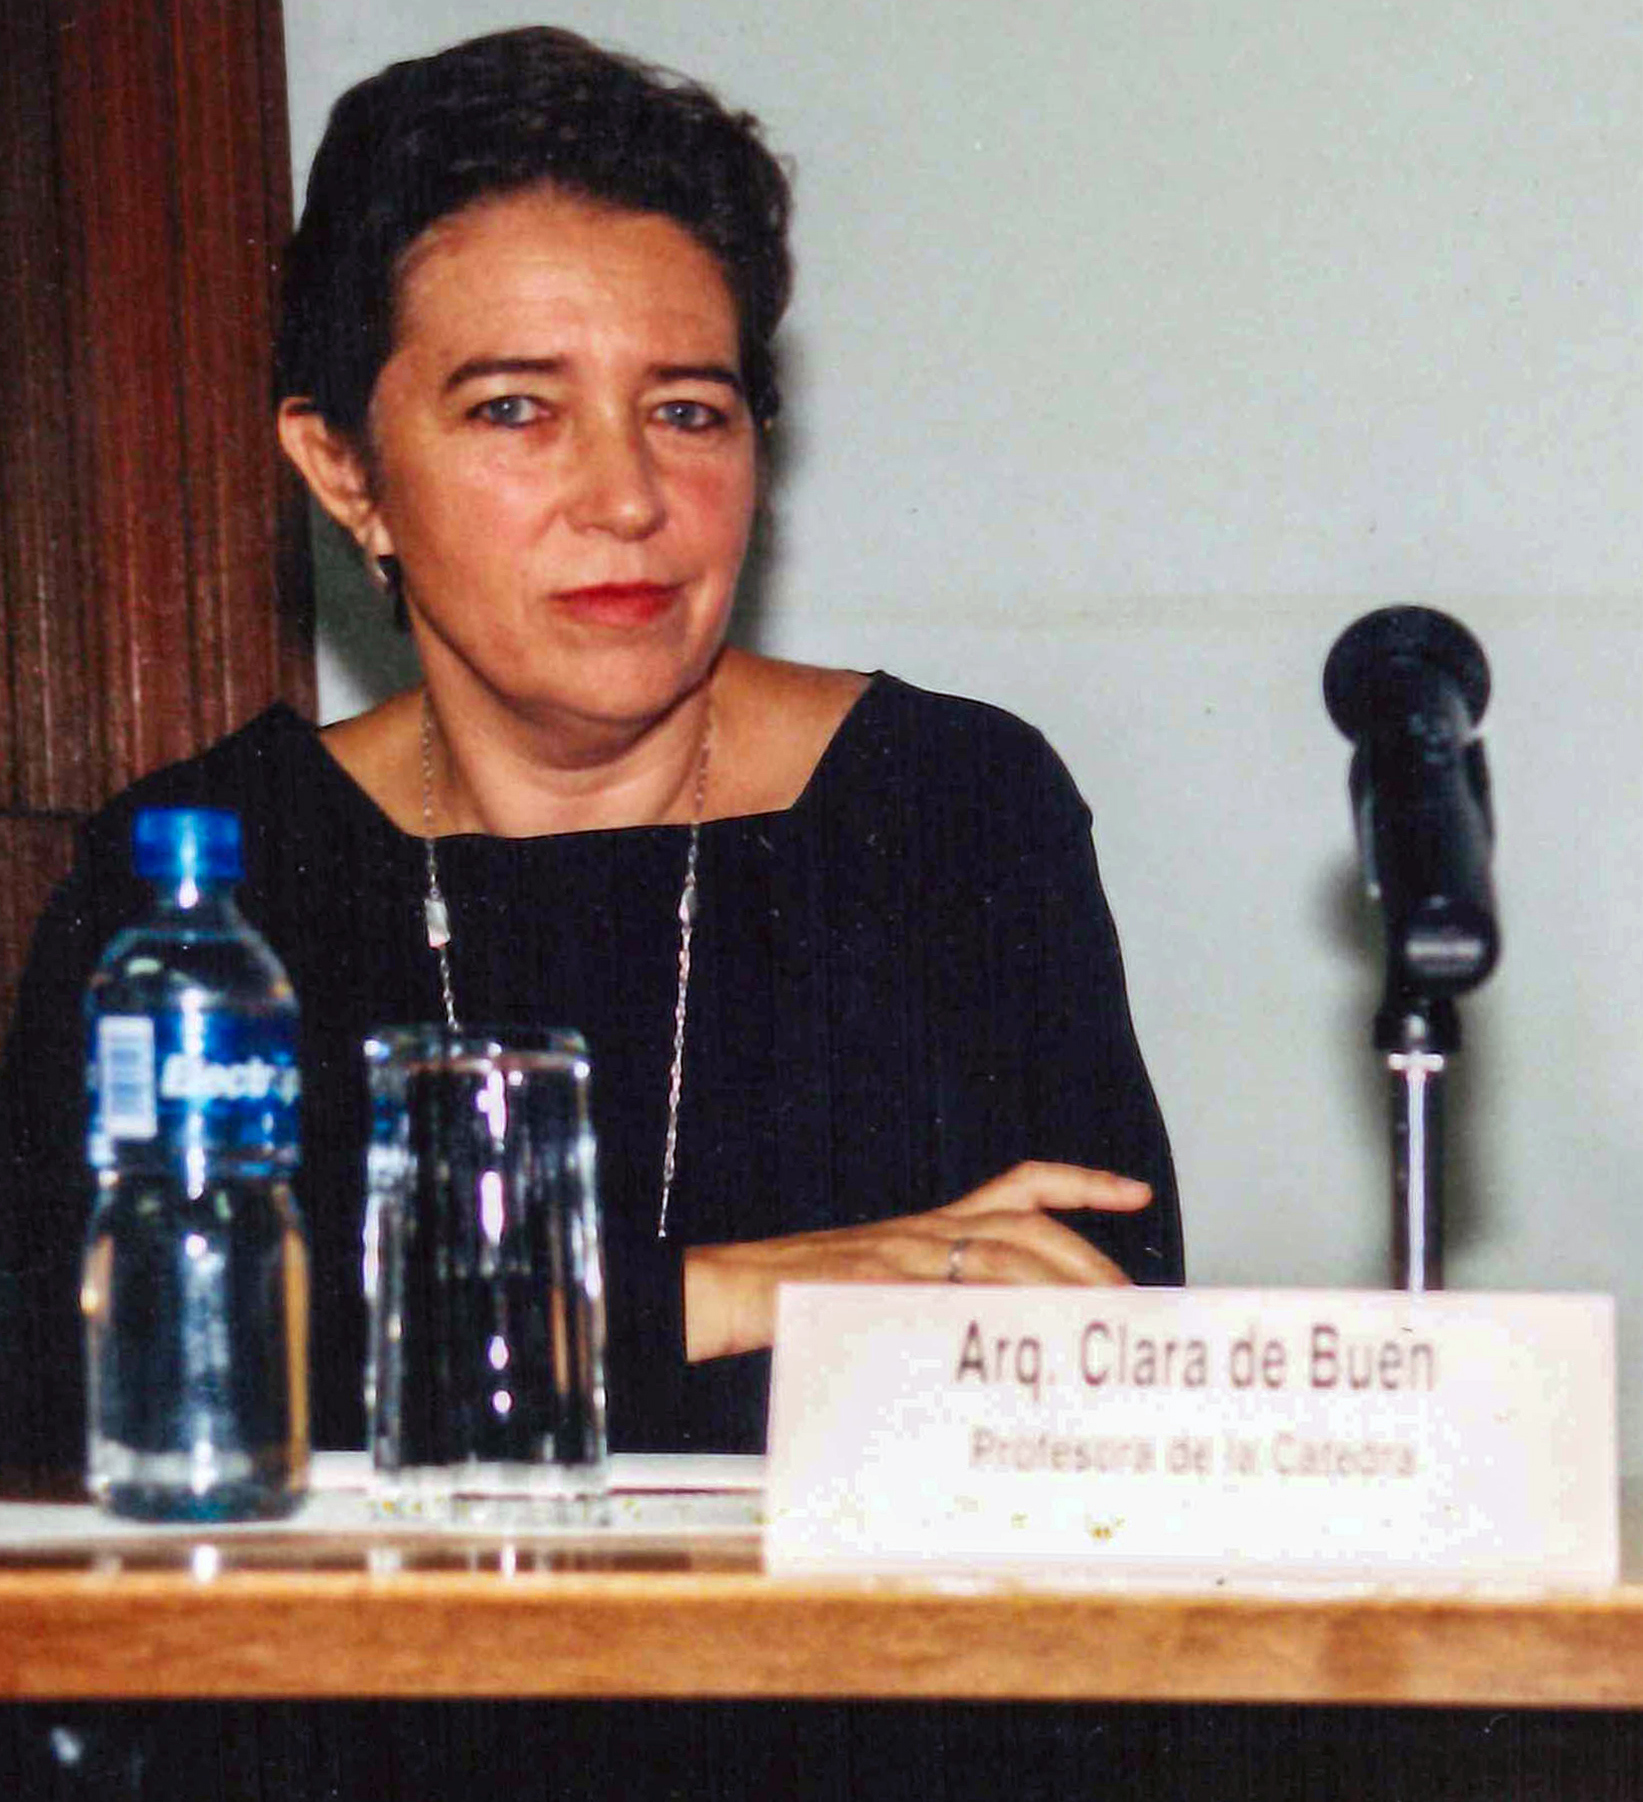  Arq. Clara de Buen. Fotografía: Archivo de la Coordinación de Producción Audiovisual FA